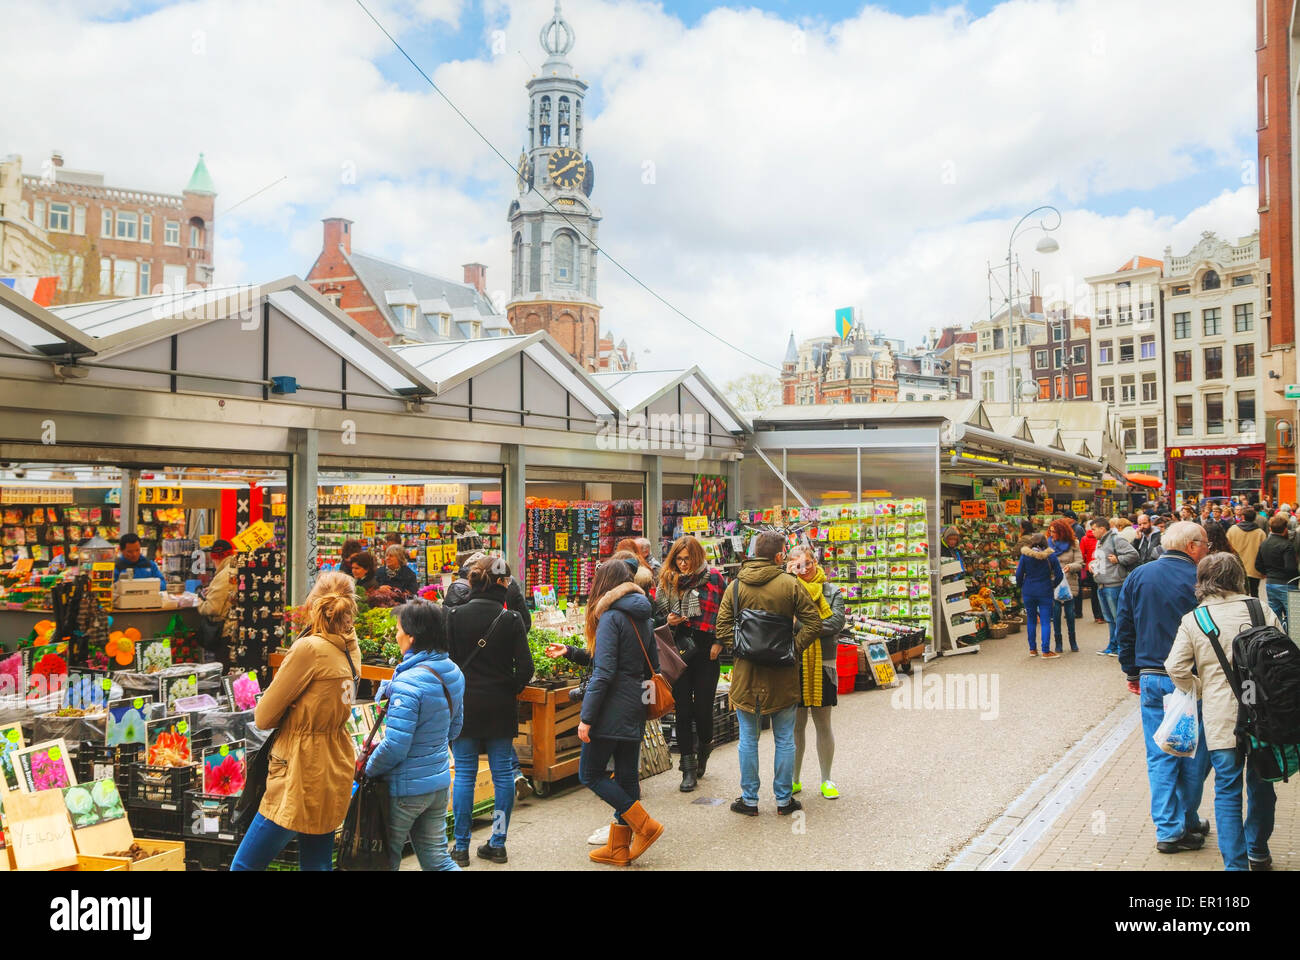 AMSTERDAM - 17 aprile: mercato dei fiori galleggiante il 17 aprile, 2015 a Amsterdam, Paesi Bassi. Foto Stock